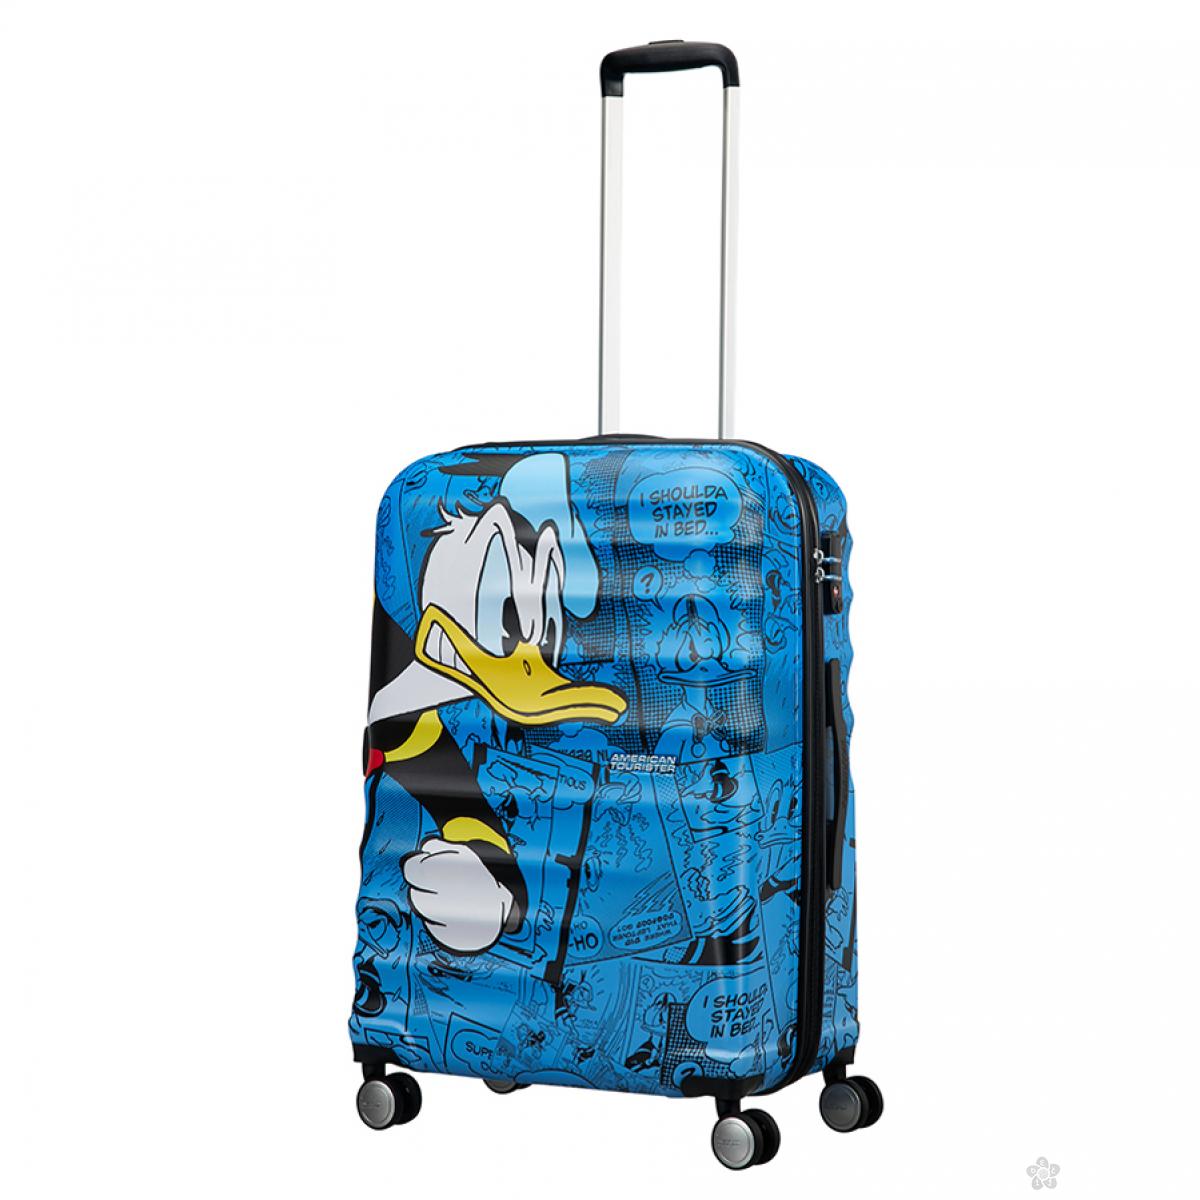 Kofer Wavebreaker Donald Duck 67cm 31C-01004 